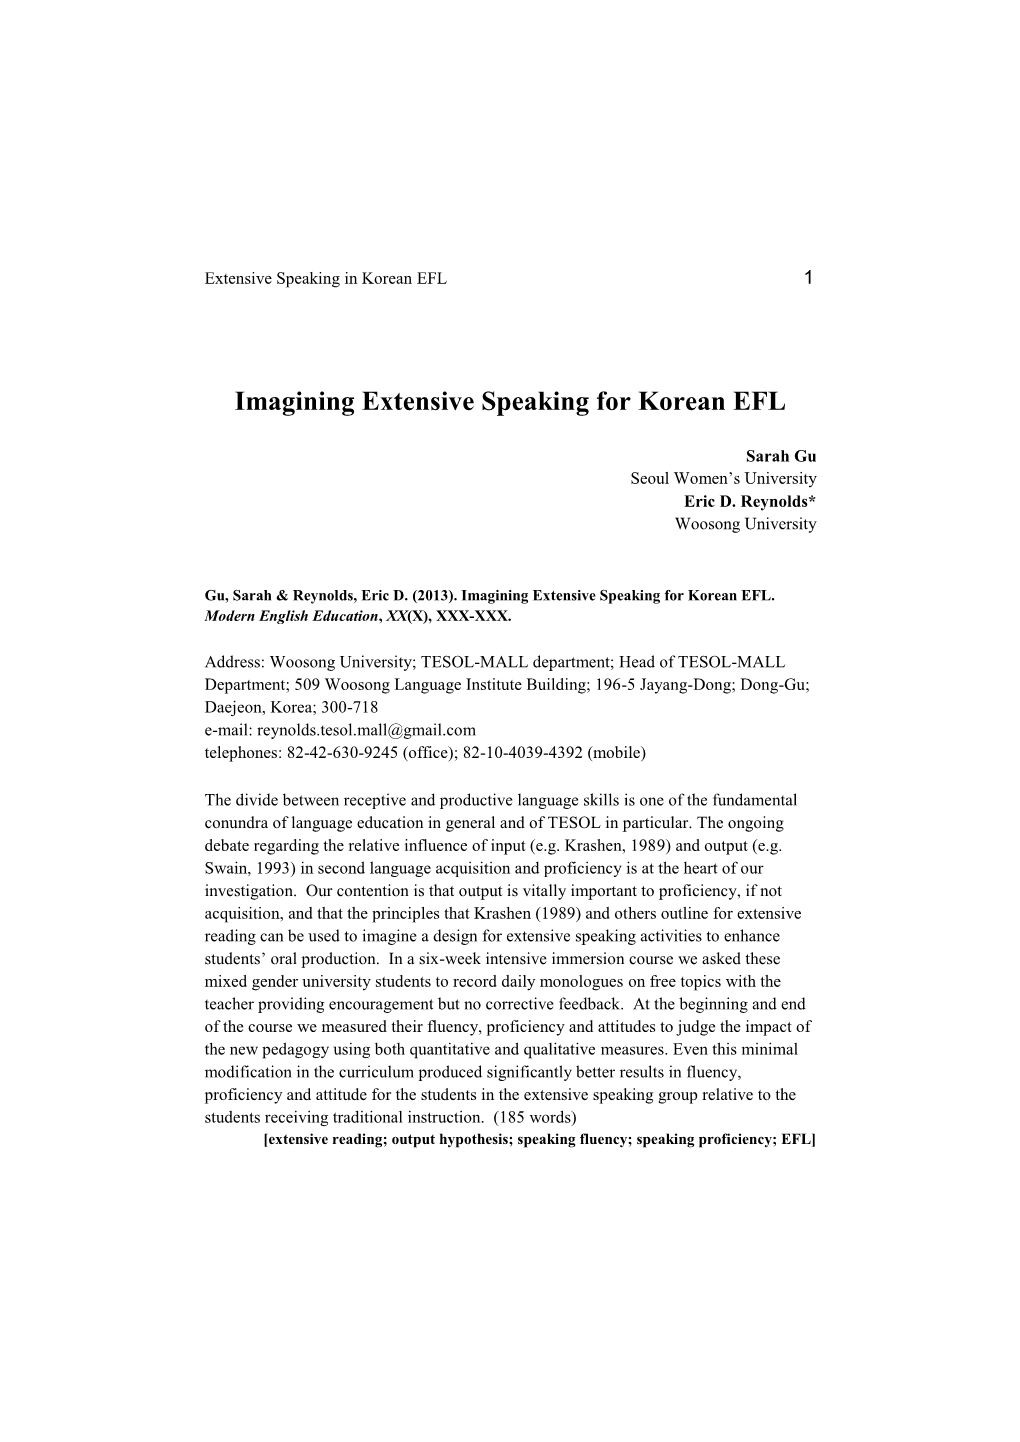 Imagining Extensive Speaking for Korean EFL